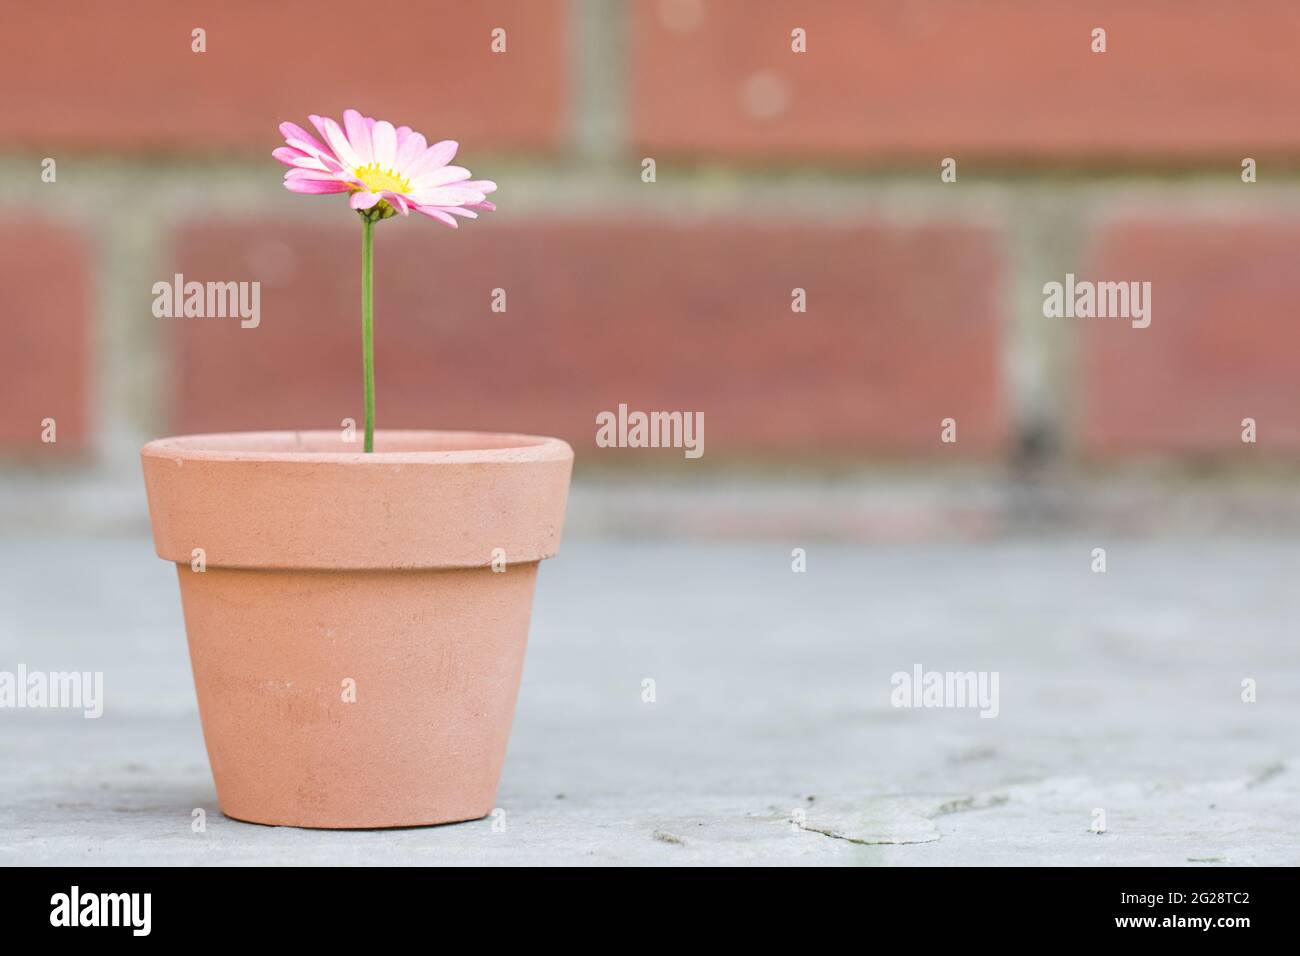 Eine hübsche rosa Gänseblümchen in einem kleinen Blumentopf in einem neuen Lebens- oder Gartenkonzept Stockfoto